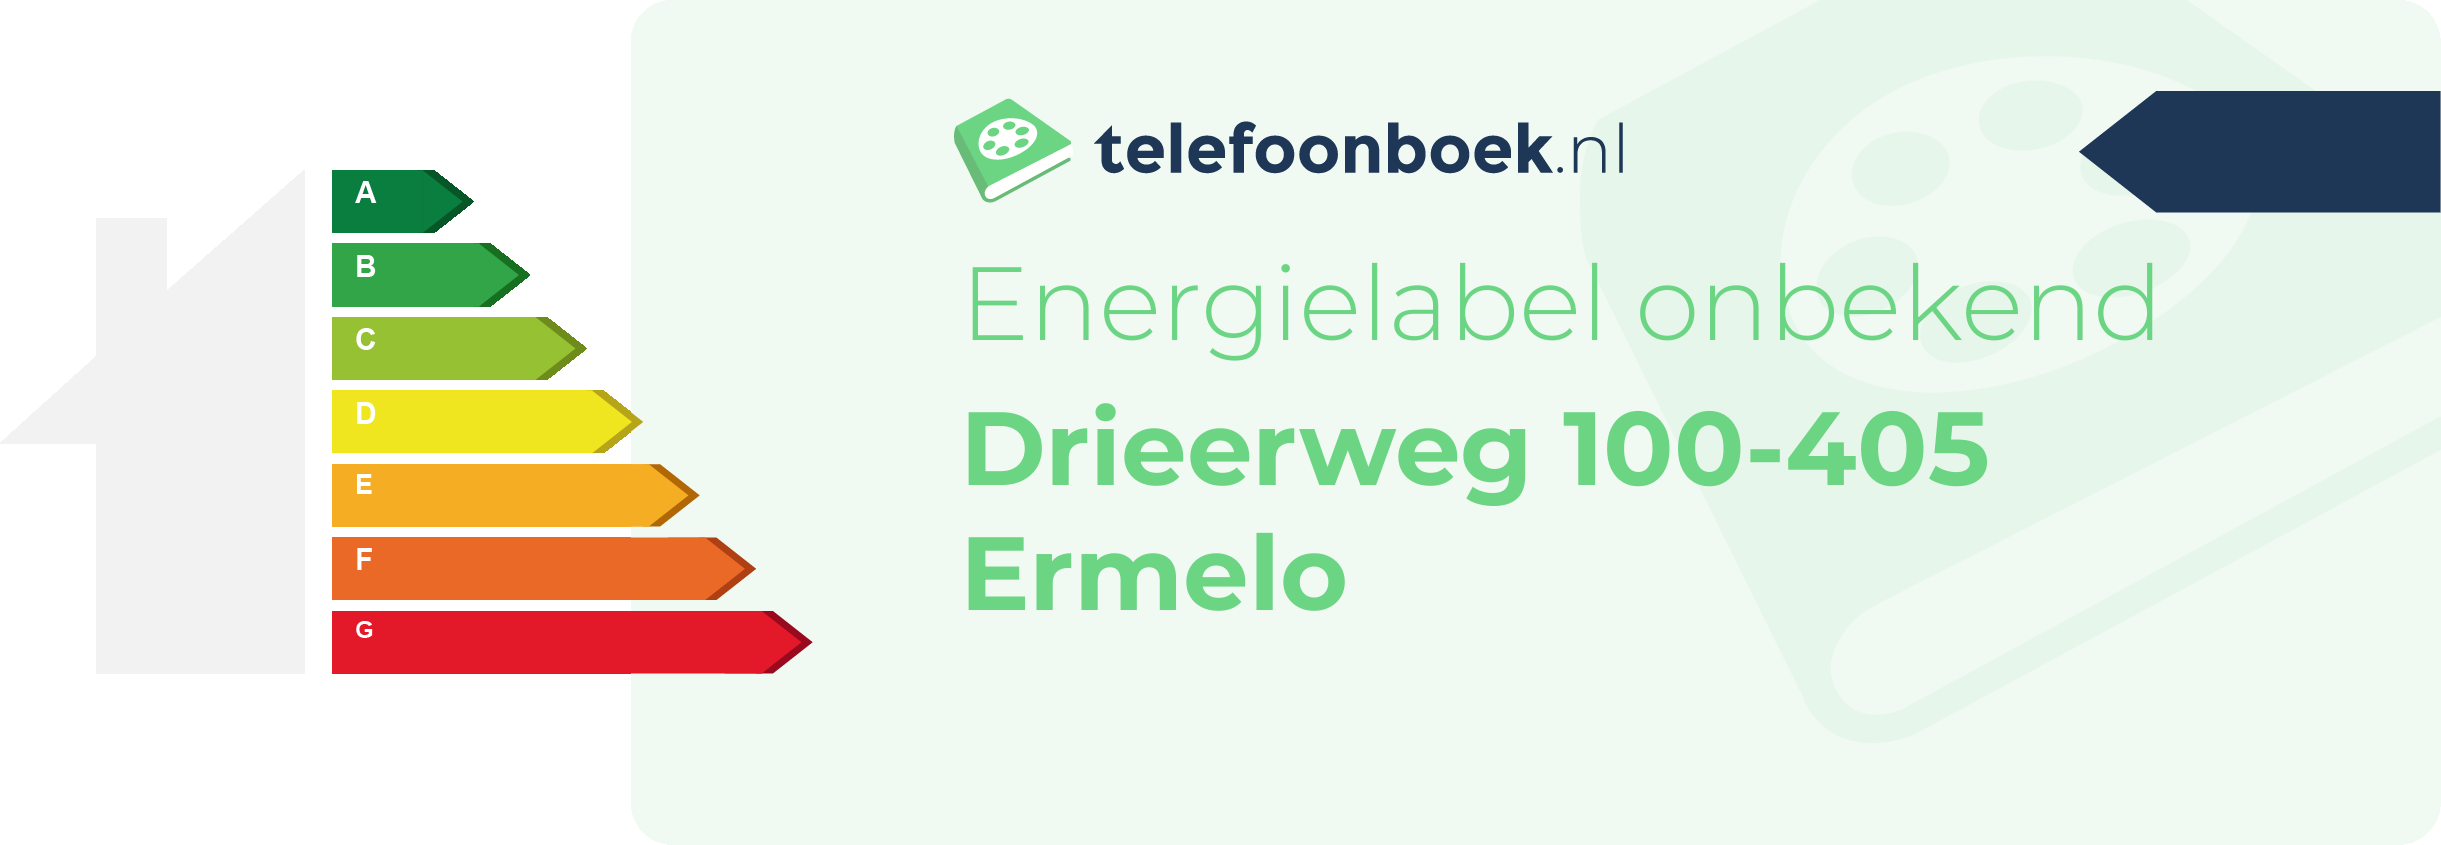 Energielabel Drieerweg 100-405 Ermelo